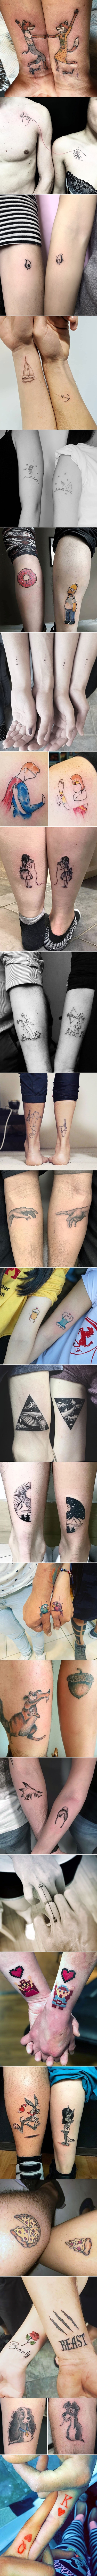 Zanimljive ideje za tetovaže koje će braću i sestre, prijatelje i bračne partnere još jače vezati